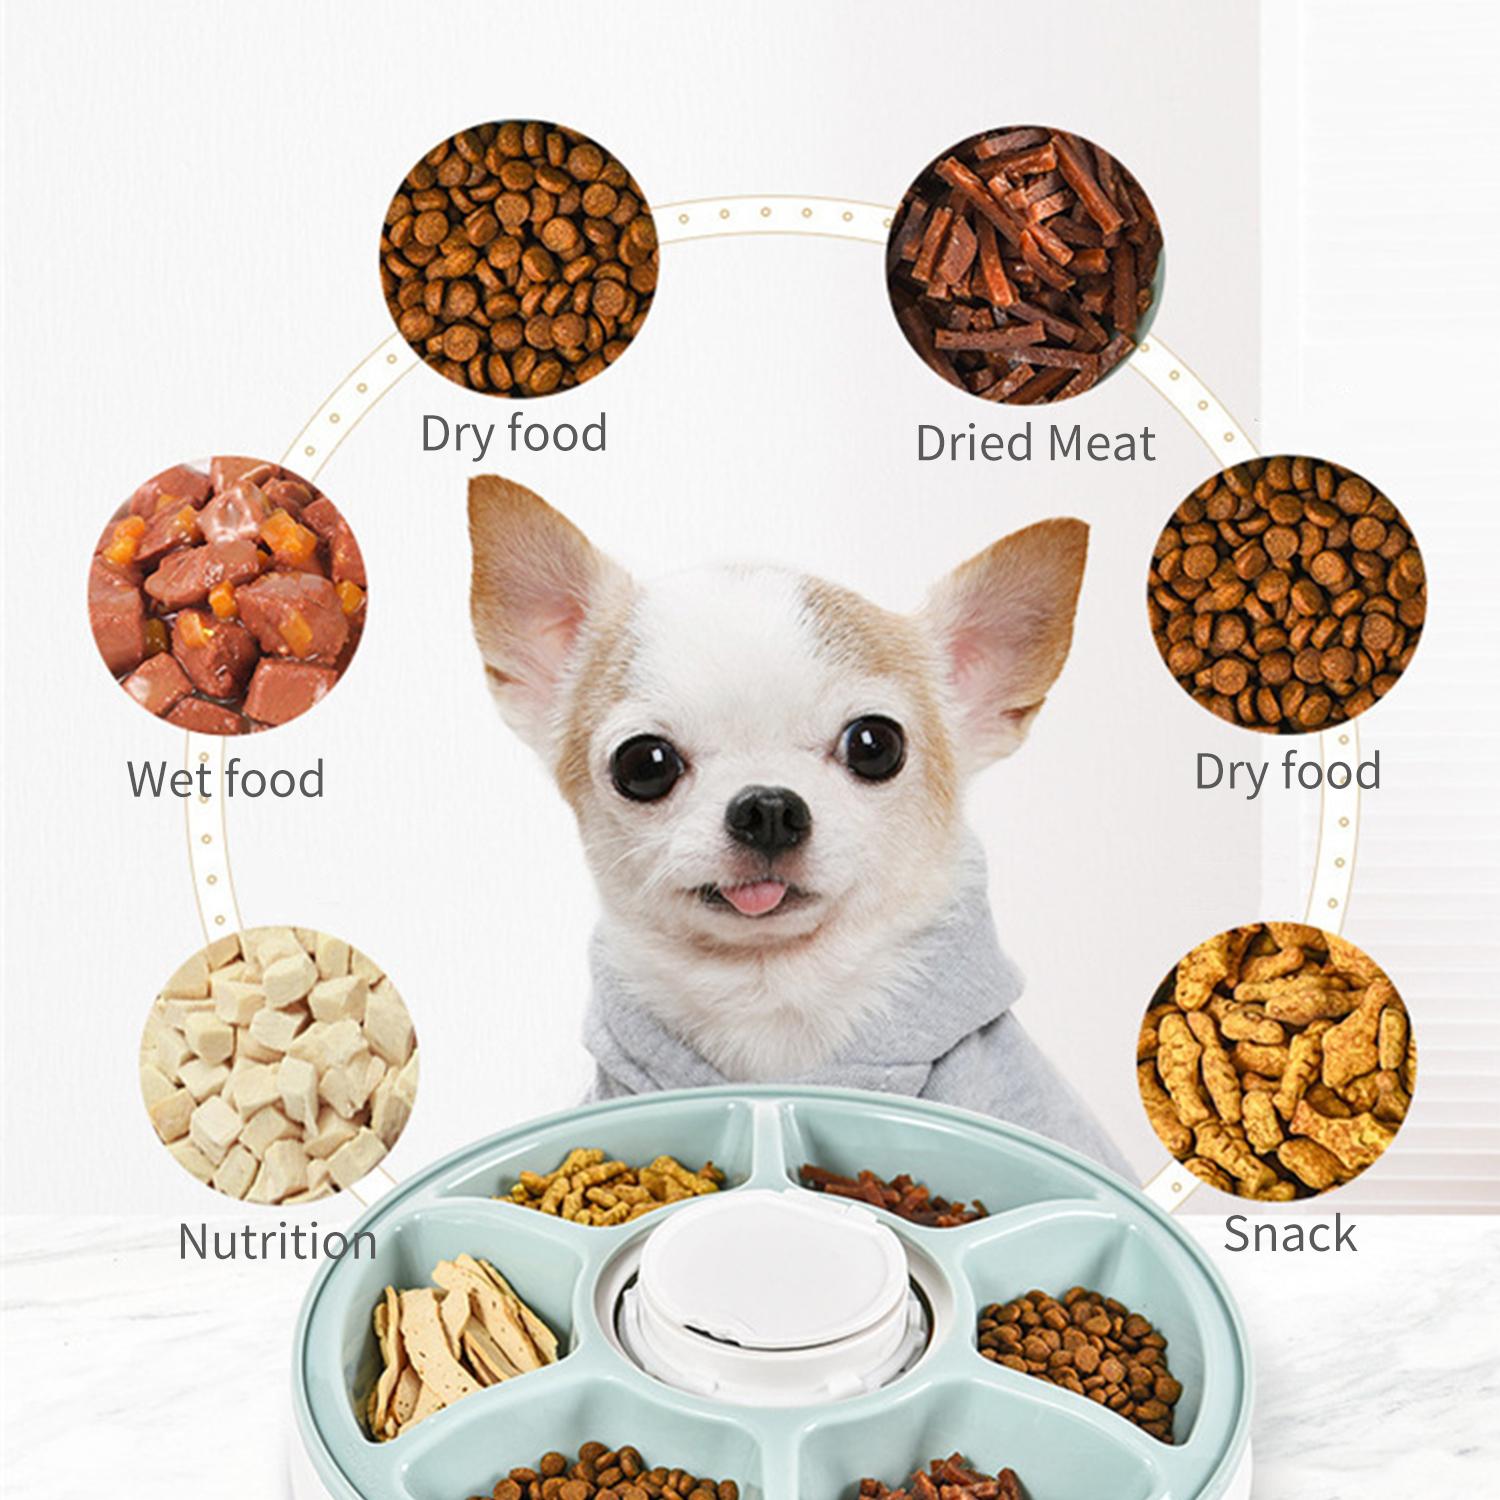 Máy ăn tự động dành cho thú cưng, có thể lập trình được 6 giờ và kiểm soát phần ăn của thú cưng